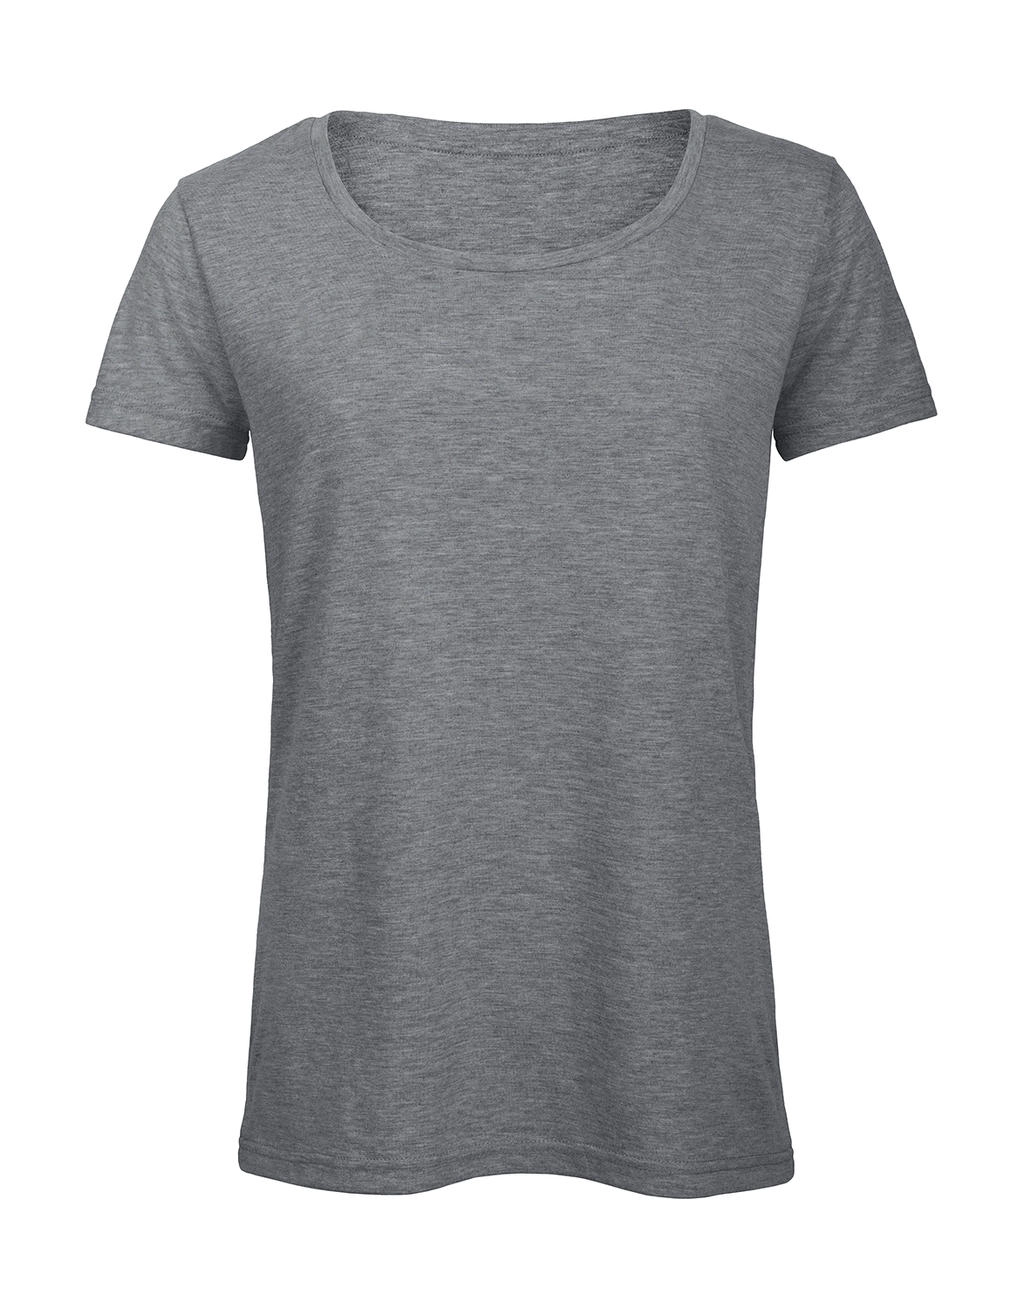 Triblend/women T-Shirt zum Besticken und Bedrucken in der Farbe Heather Light Grey mit Ihren Logo, Schriftzug oder Motiv.